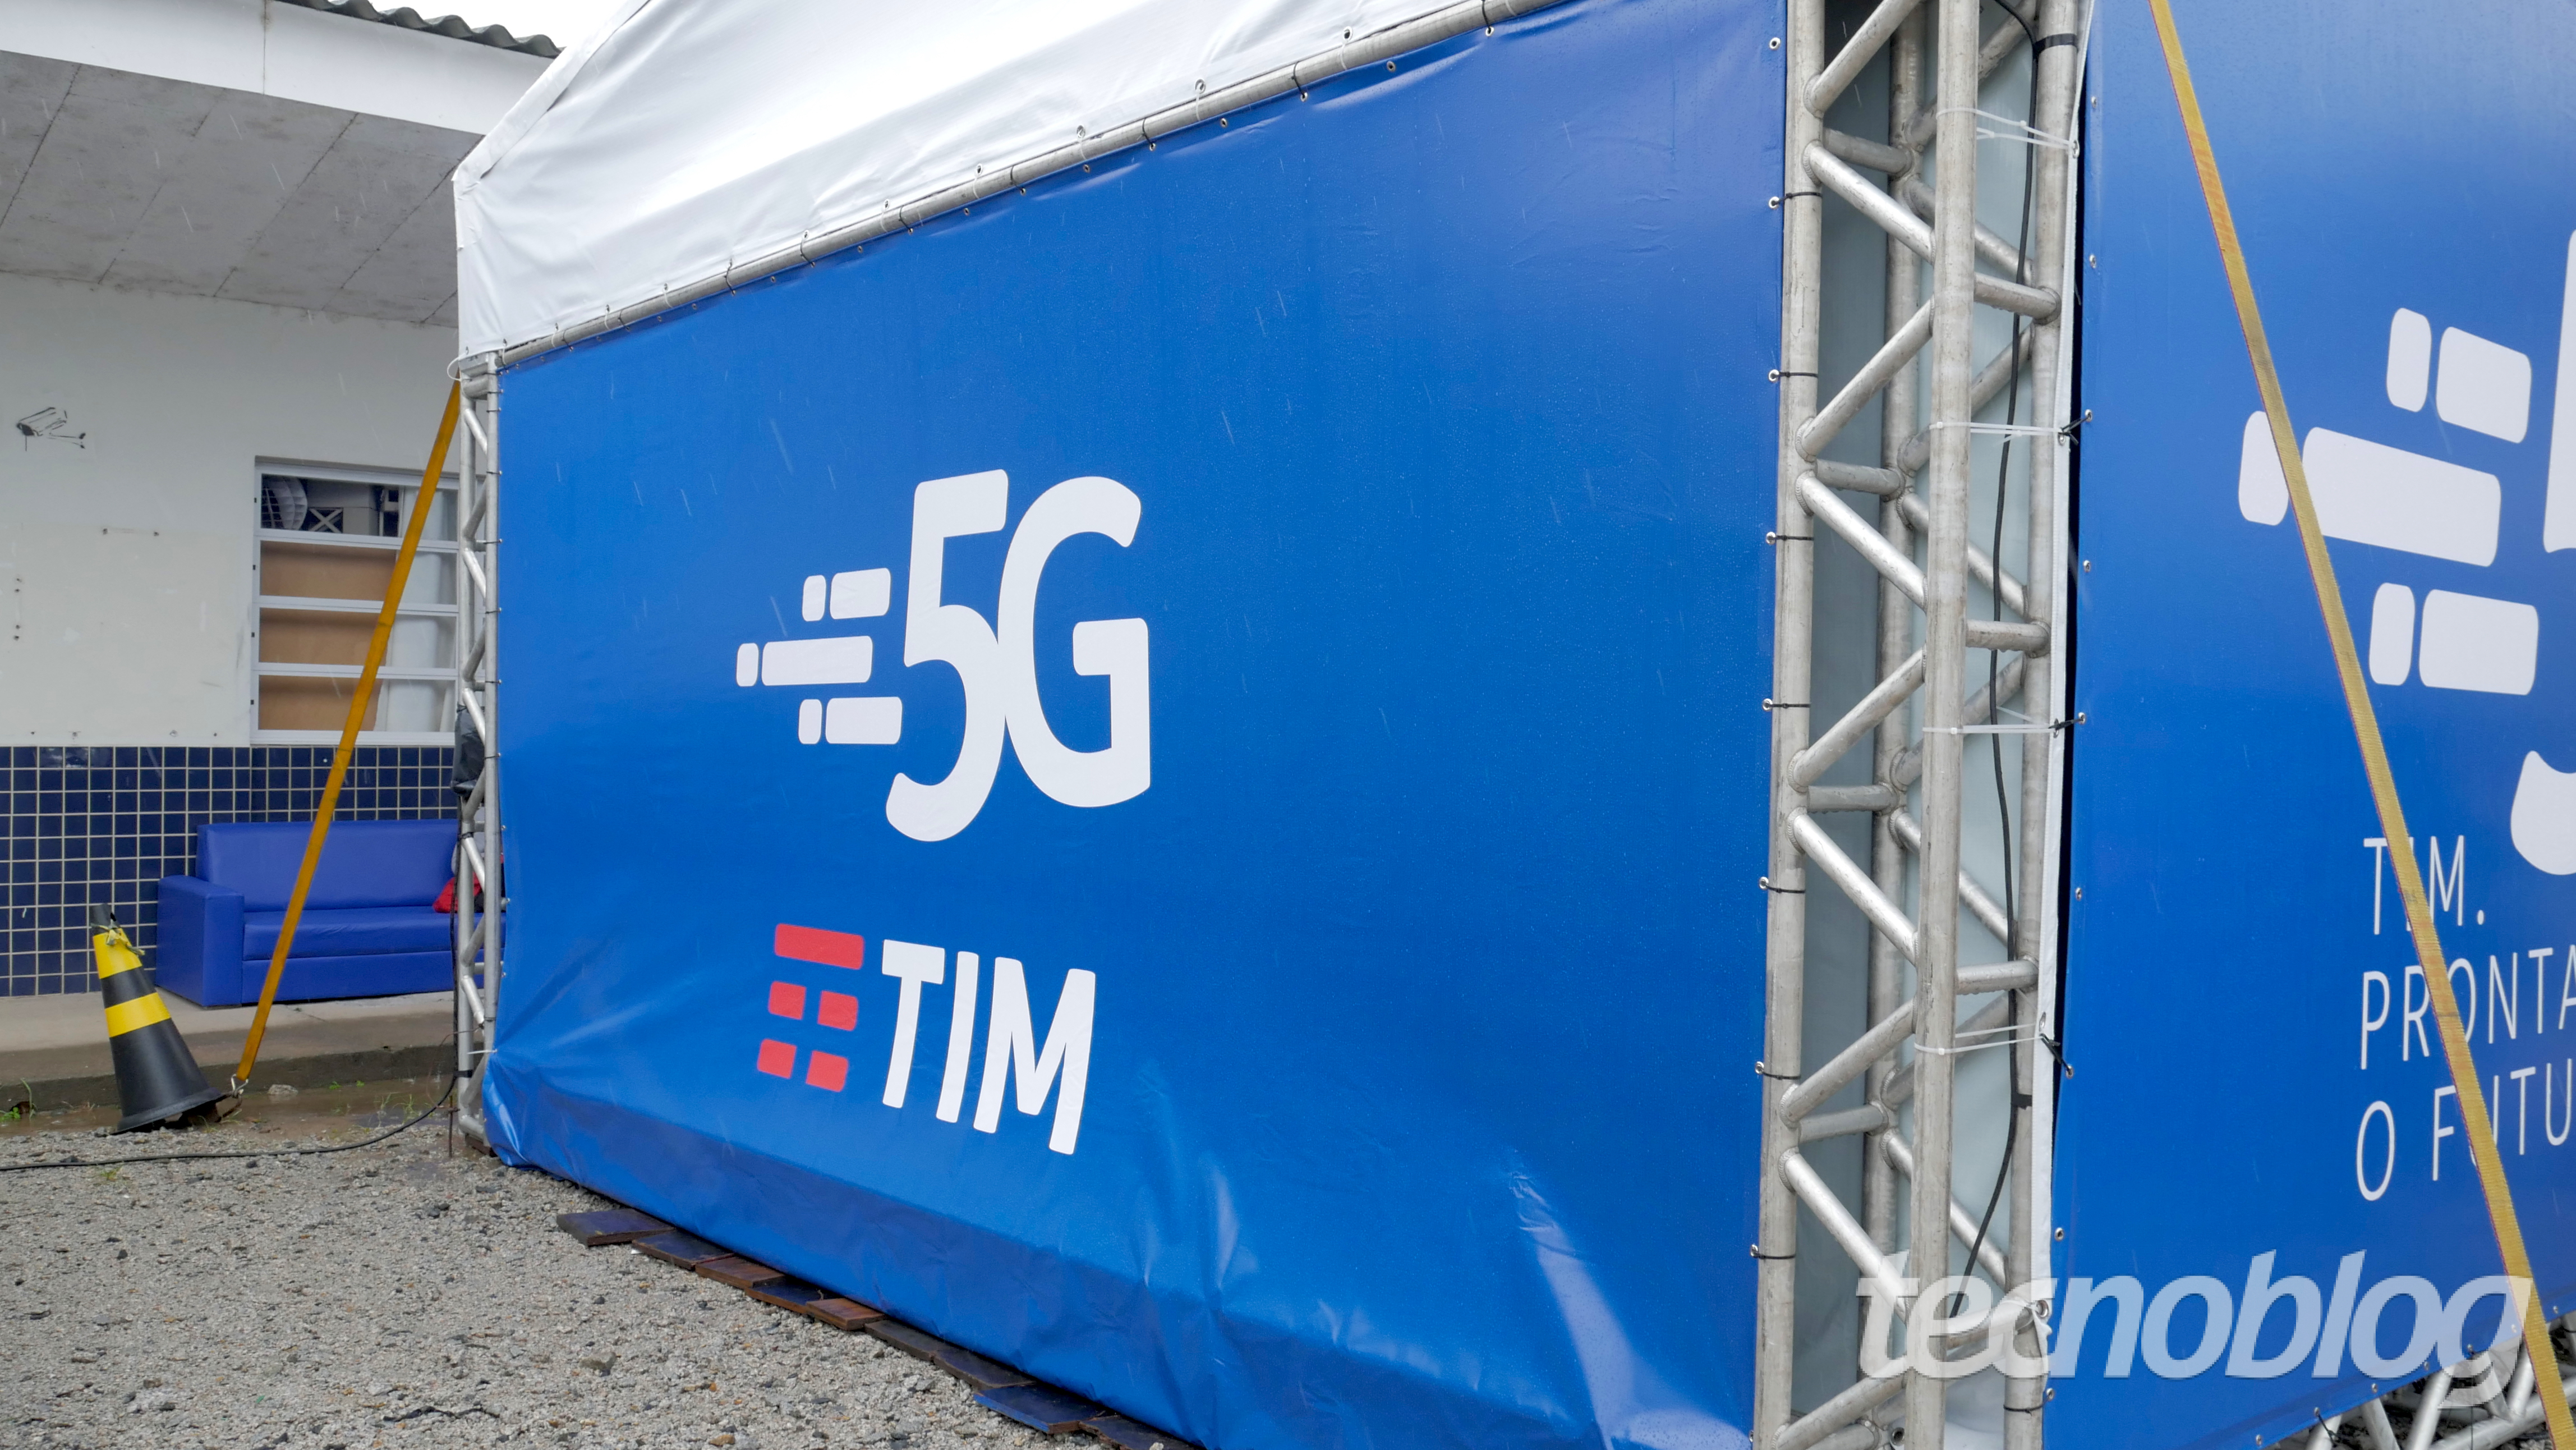 TIM vai arrecadar até R$ 5,75 bi para construir 5G e expandir rede atual | Telecomunicações